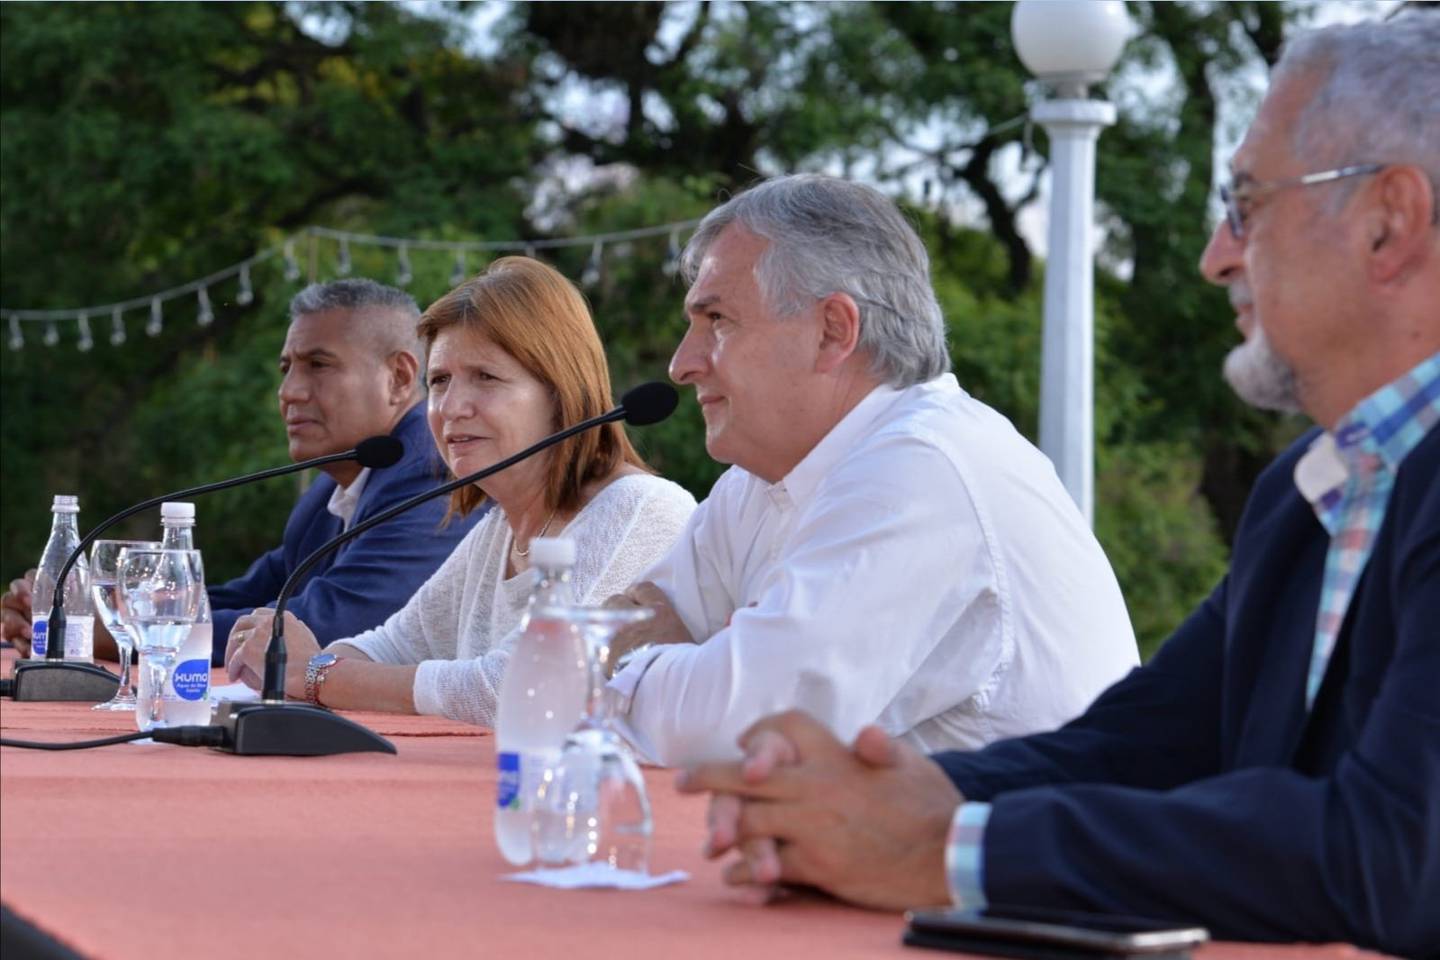 La presidenta del PRO visitó al gobernador radical en Jujuy y coincidieron en elogios.dfd